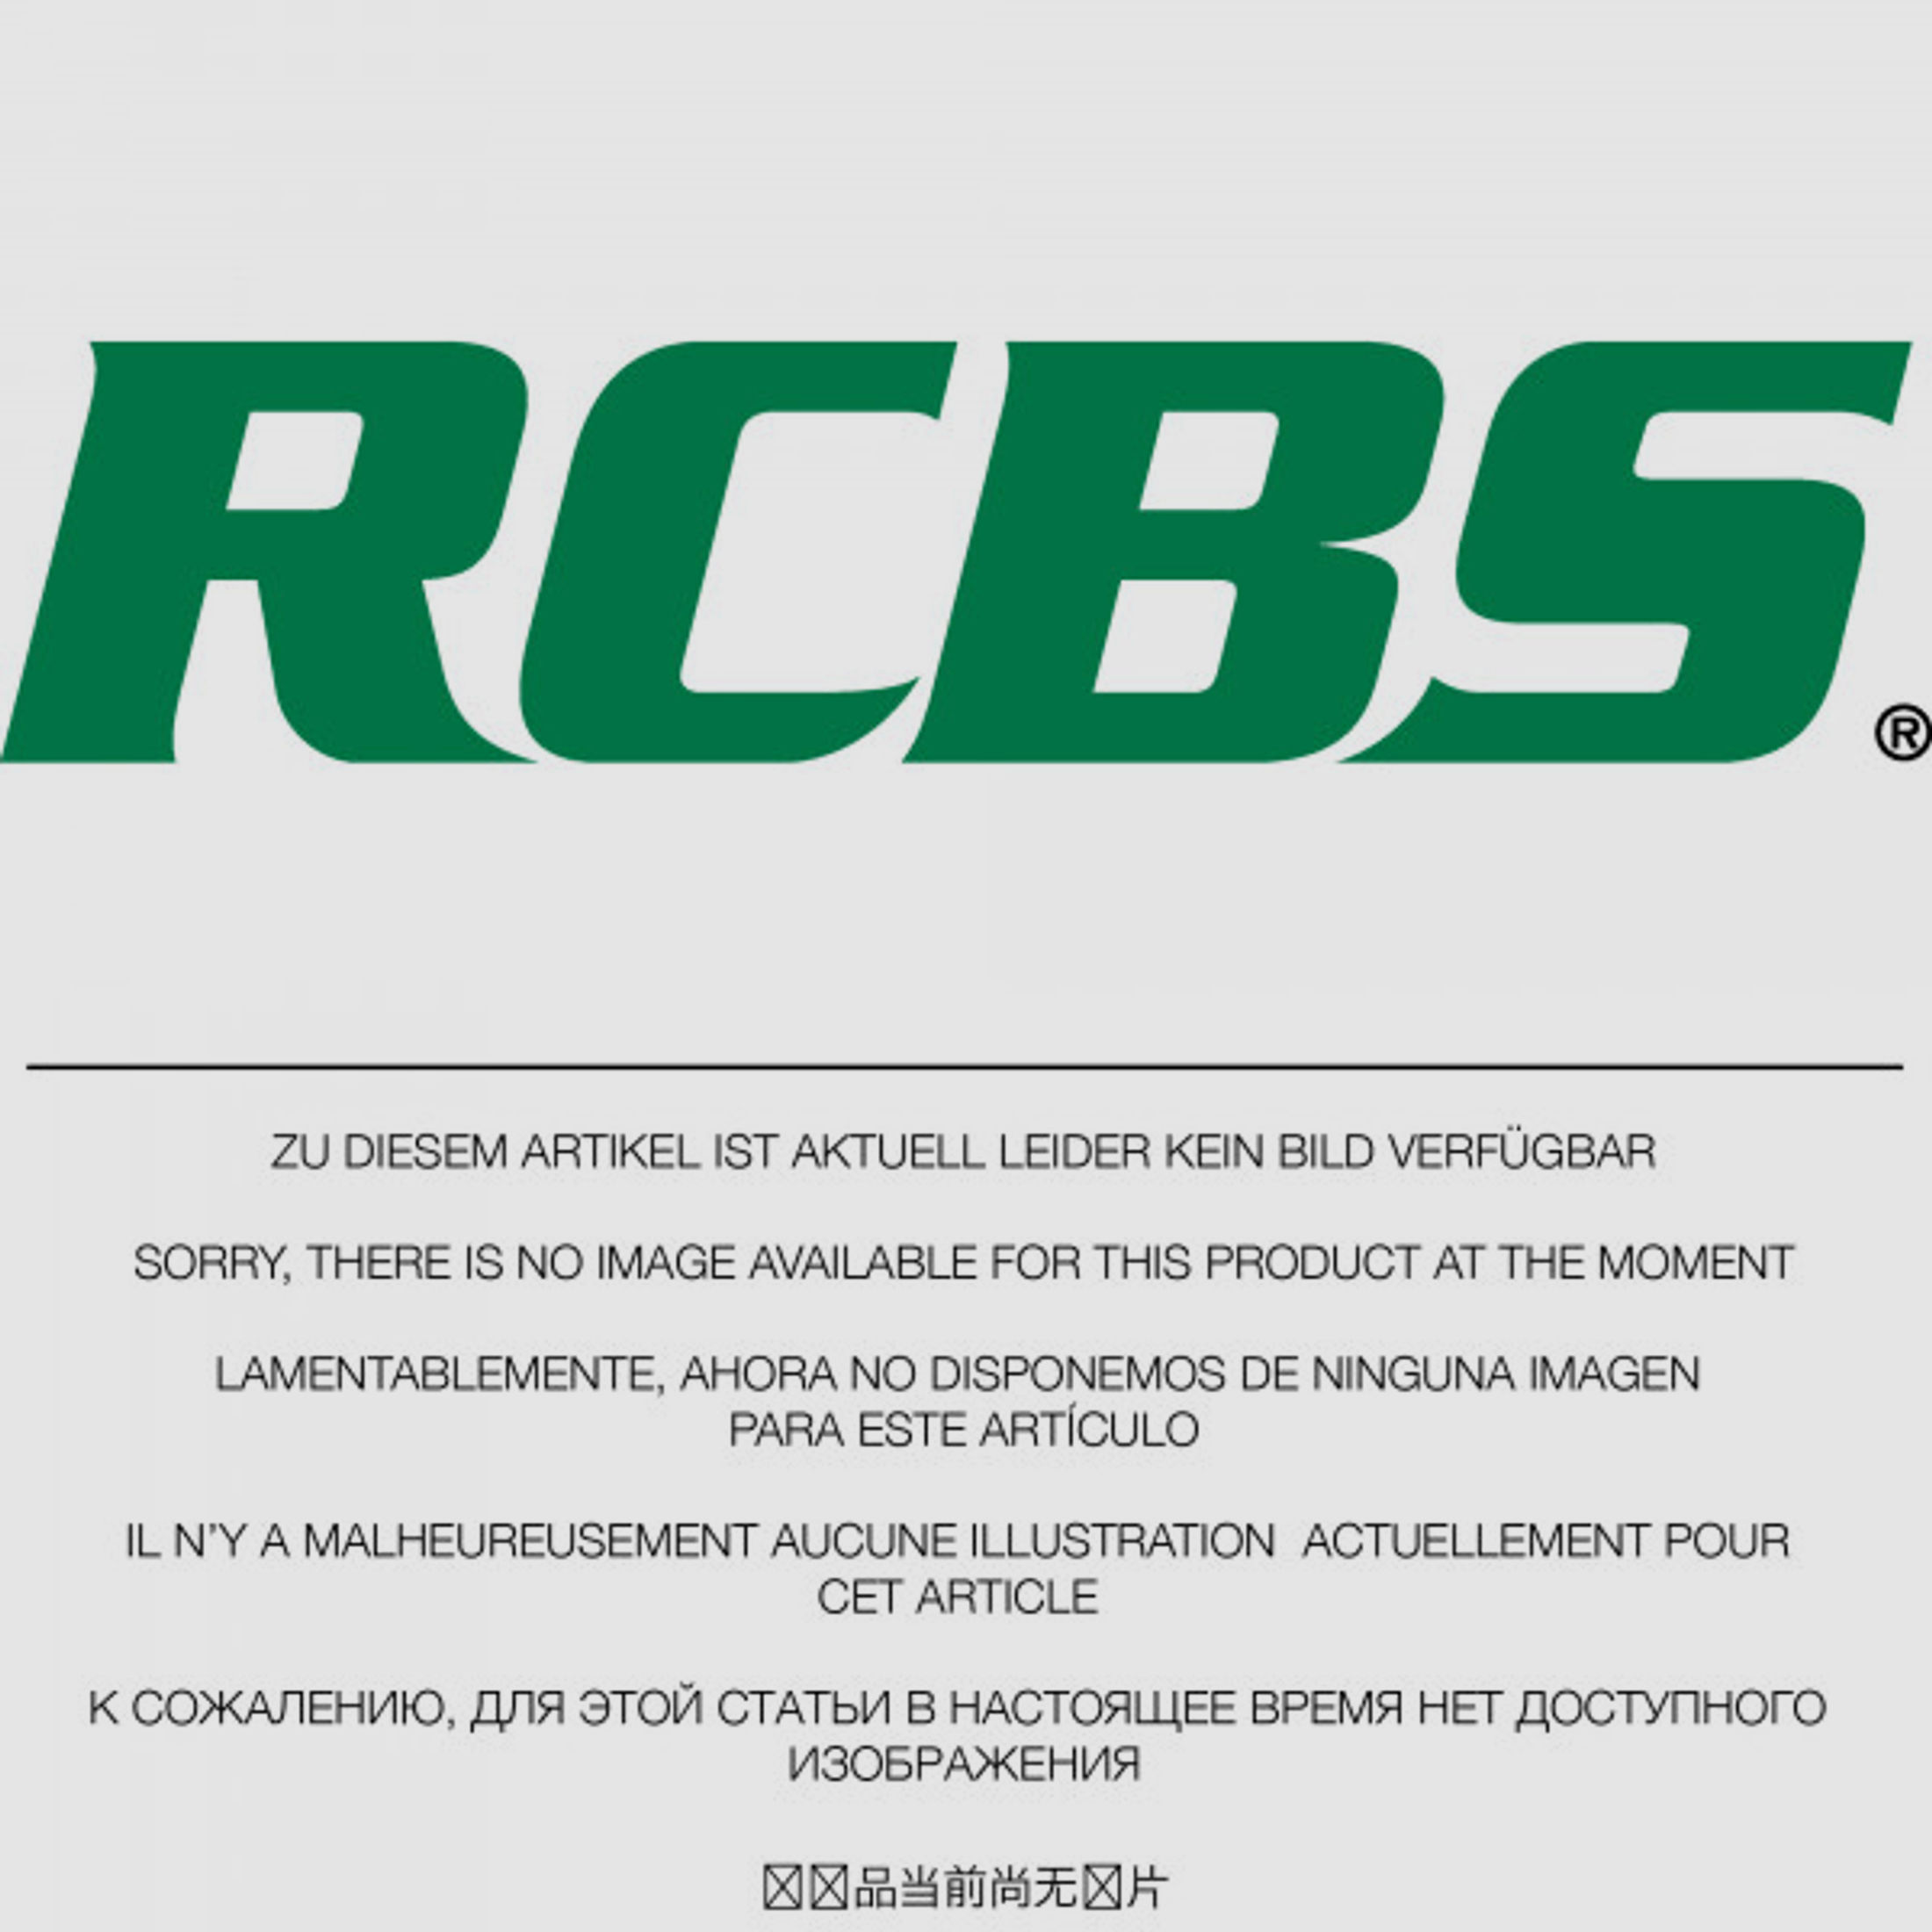 RCBS Lube-A-Matic Top Punch Geschoss Setzstempel Nr. 460 #82534